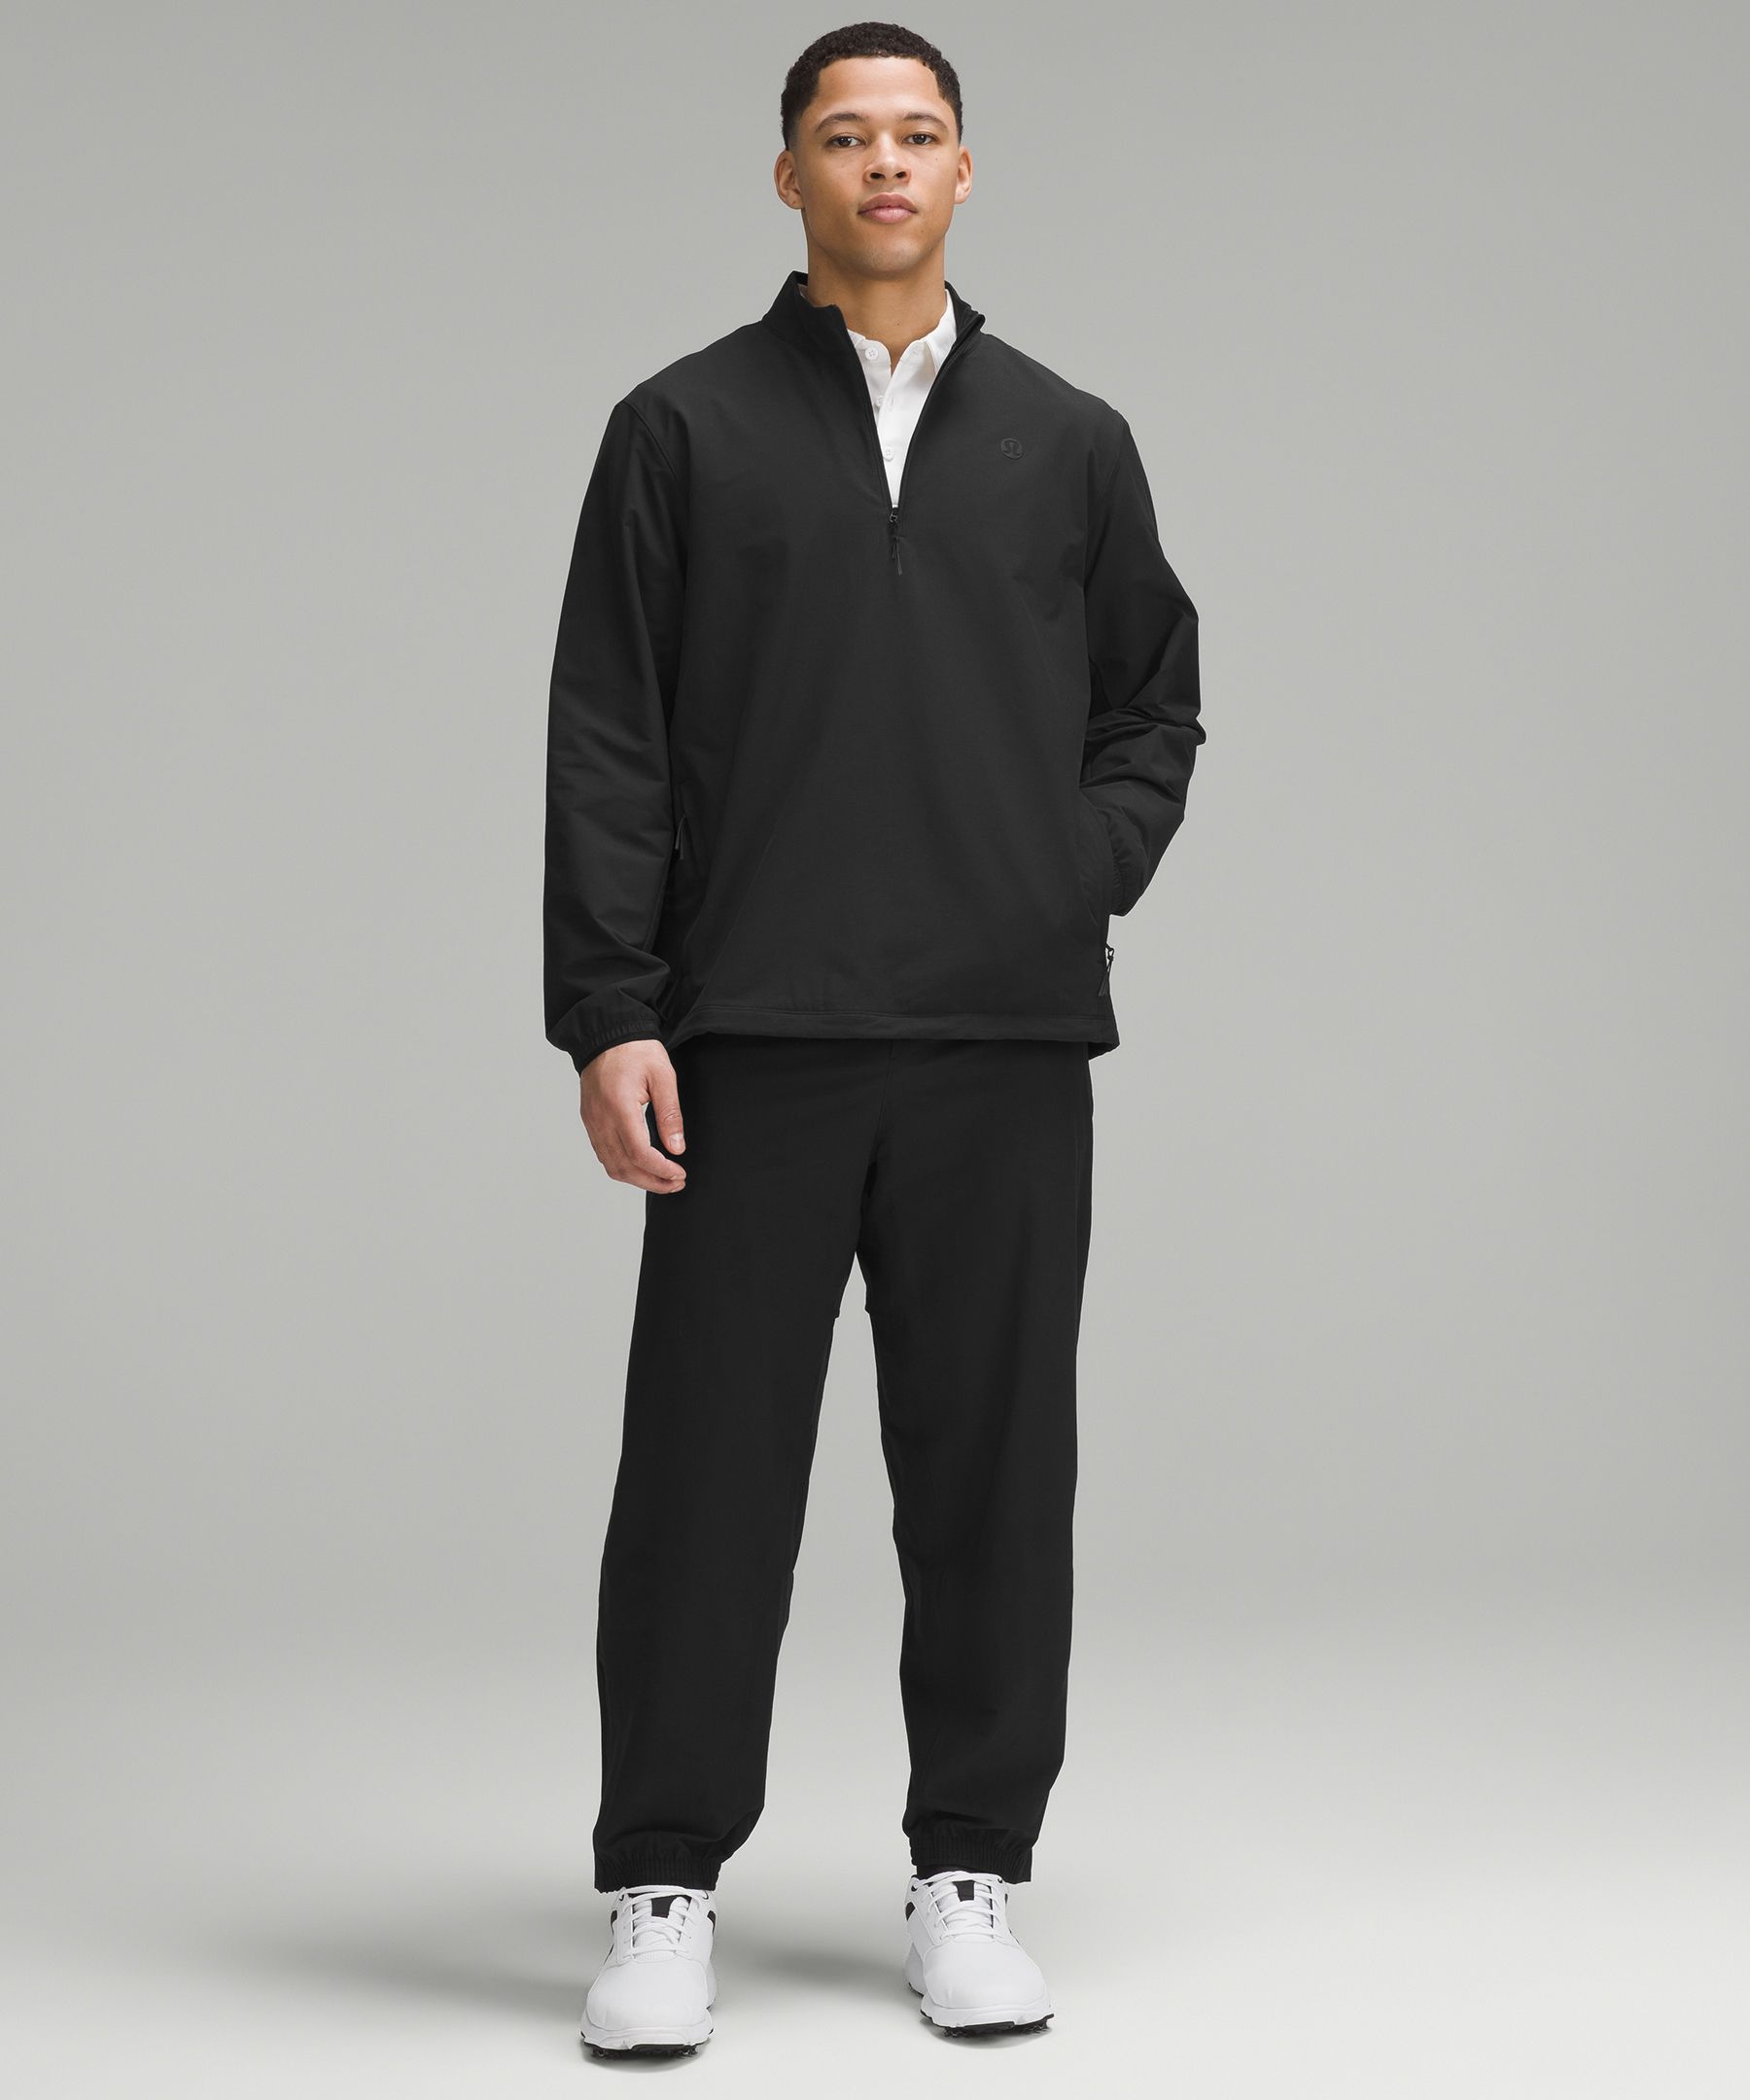 Golf Half-Zip Windbreaker | Men's Hoodies & Sweatshirts